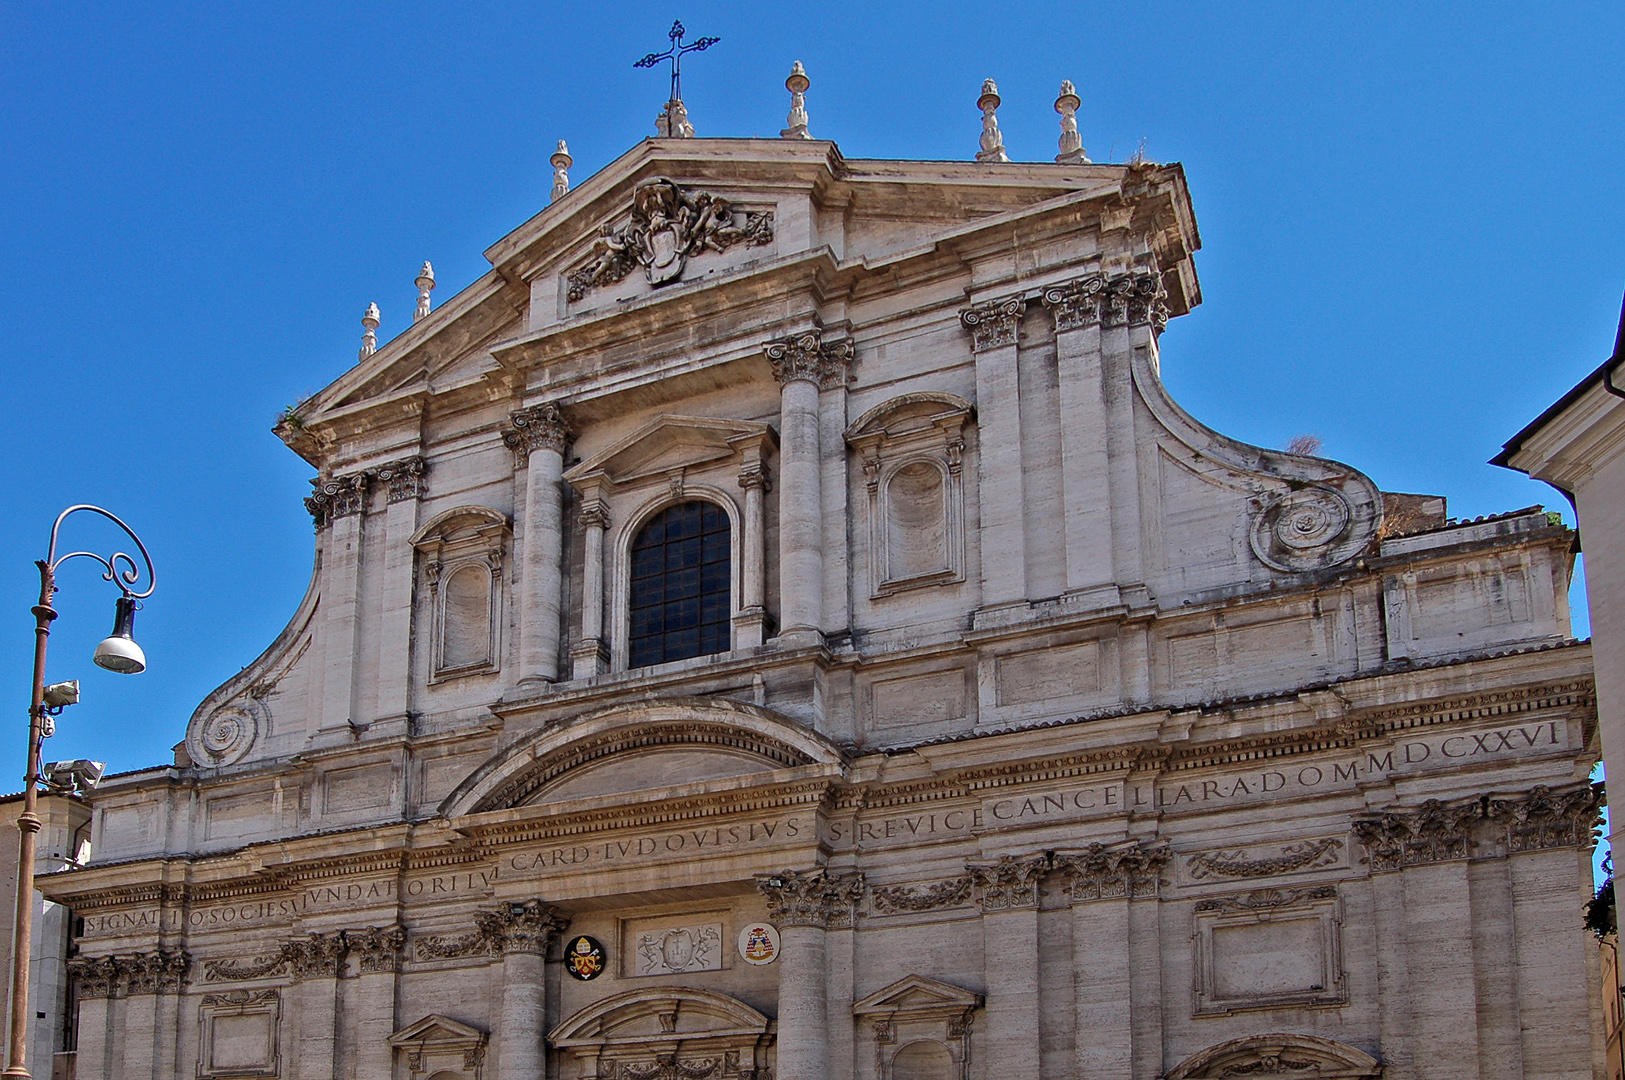 Kerk van Sint-Ignatius. Rome, Italië.; Church of Saint Ignatius, Rome, Italy